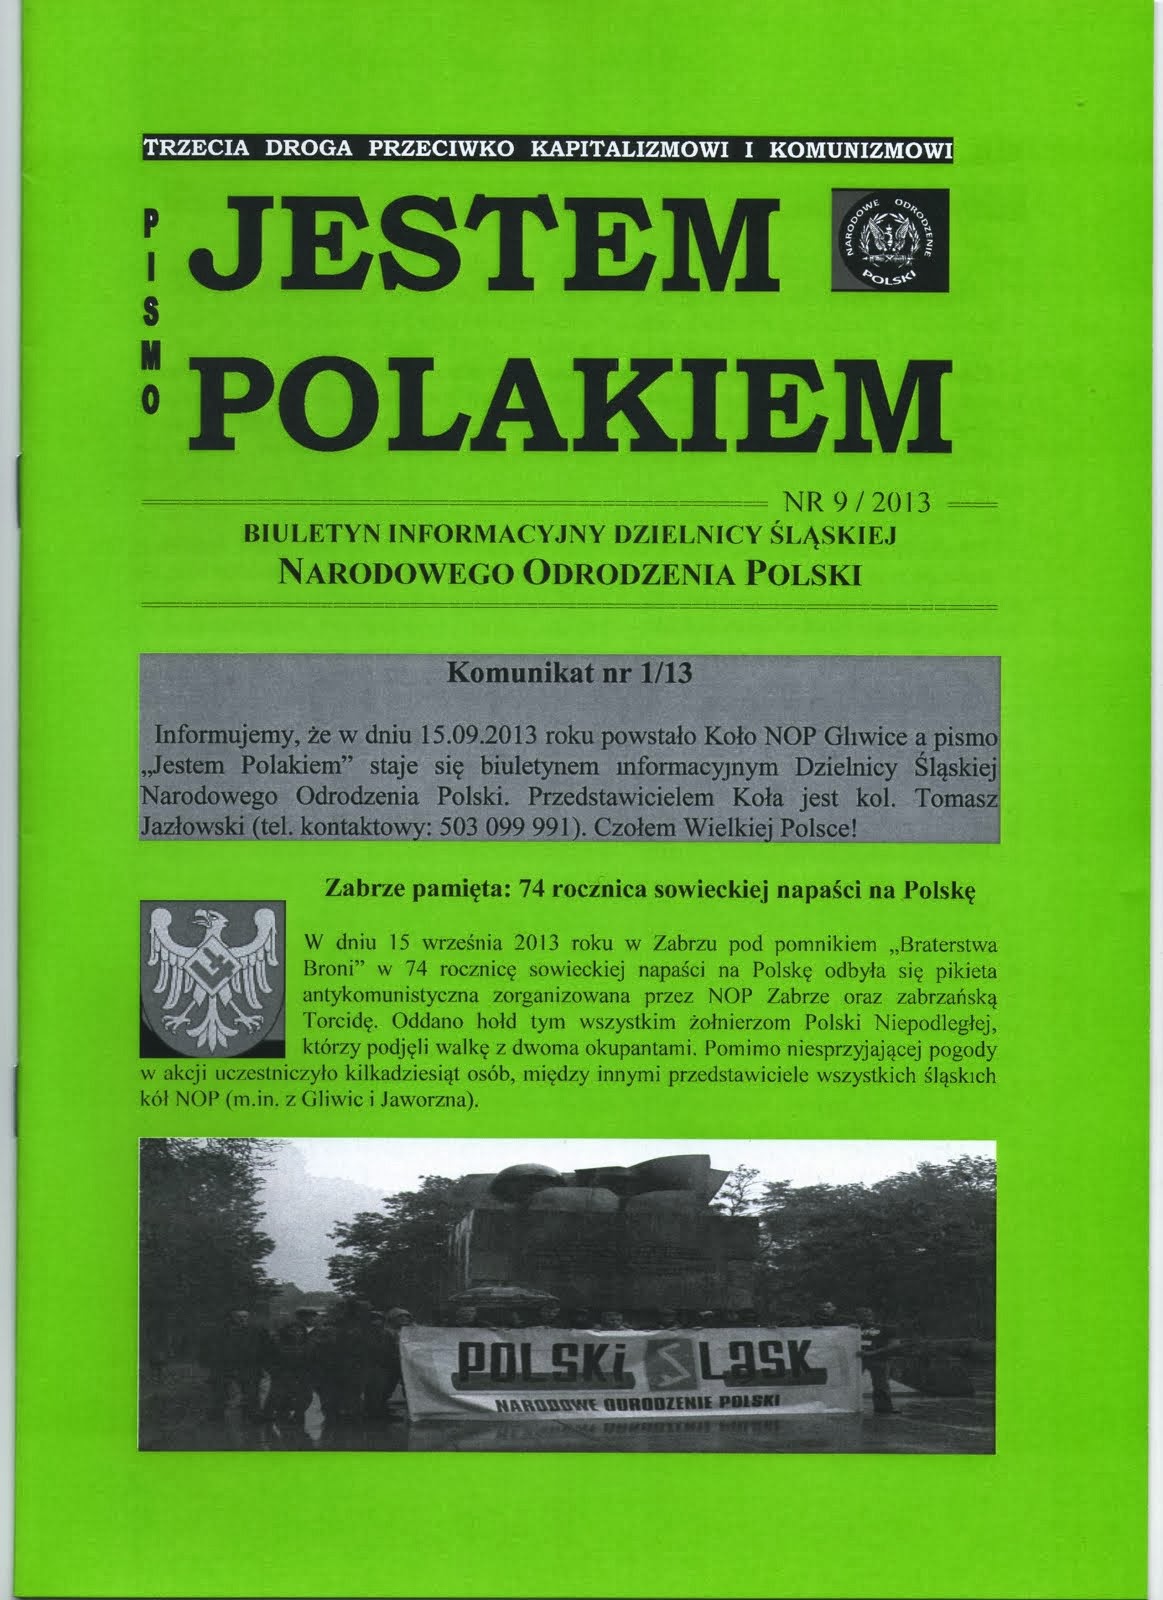 "JESTEM POLAKIEM" - PISMO DZIELNICY ŚLĄSKIEJ NOP